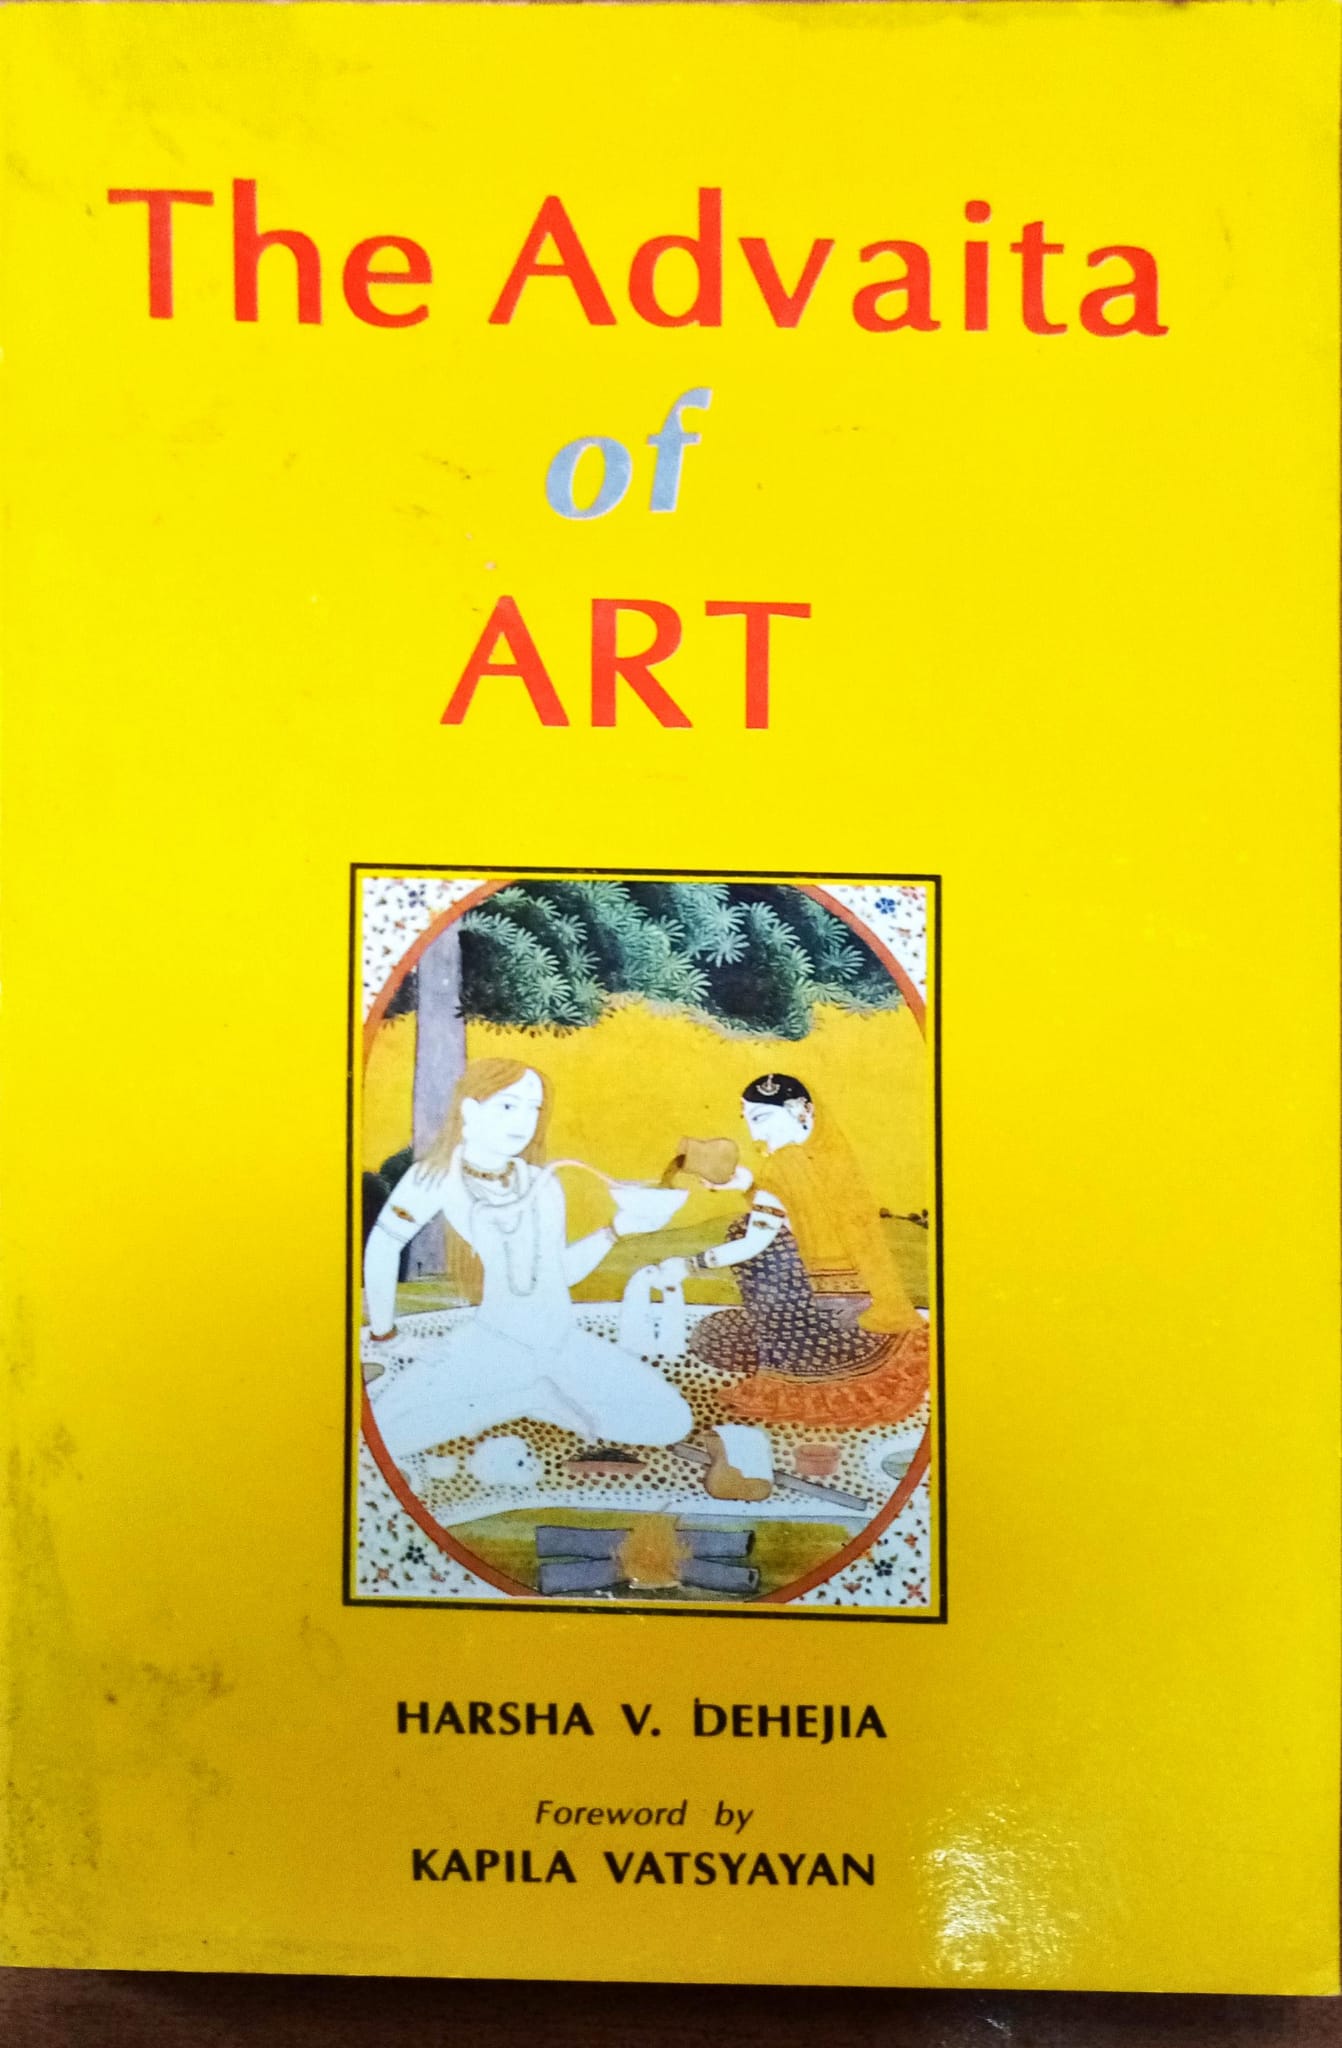 The Advaita of Art